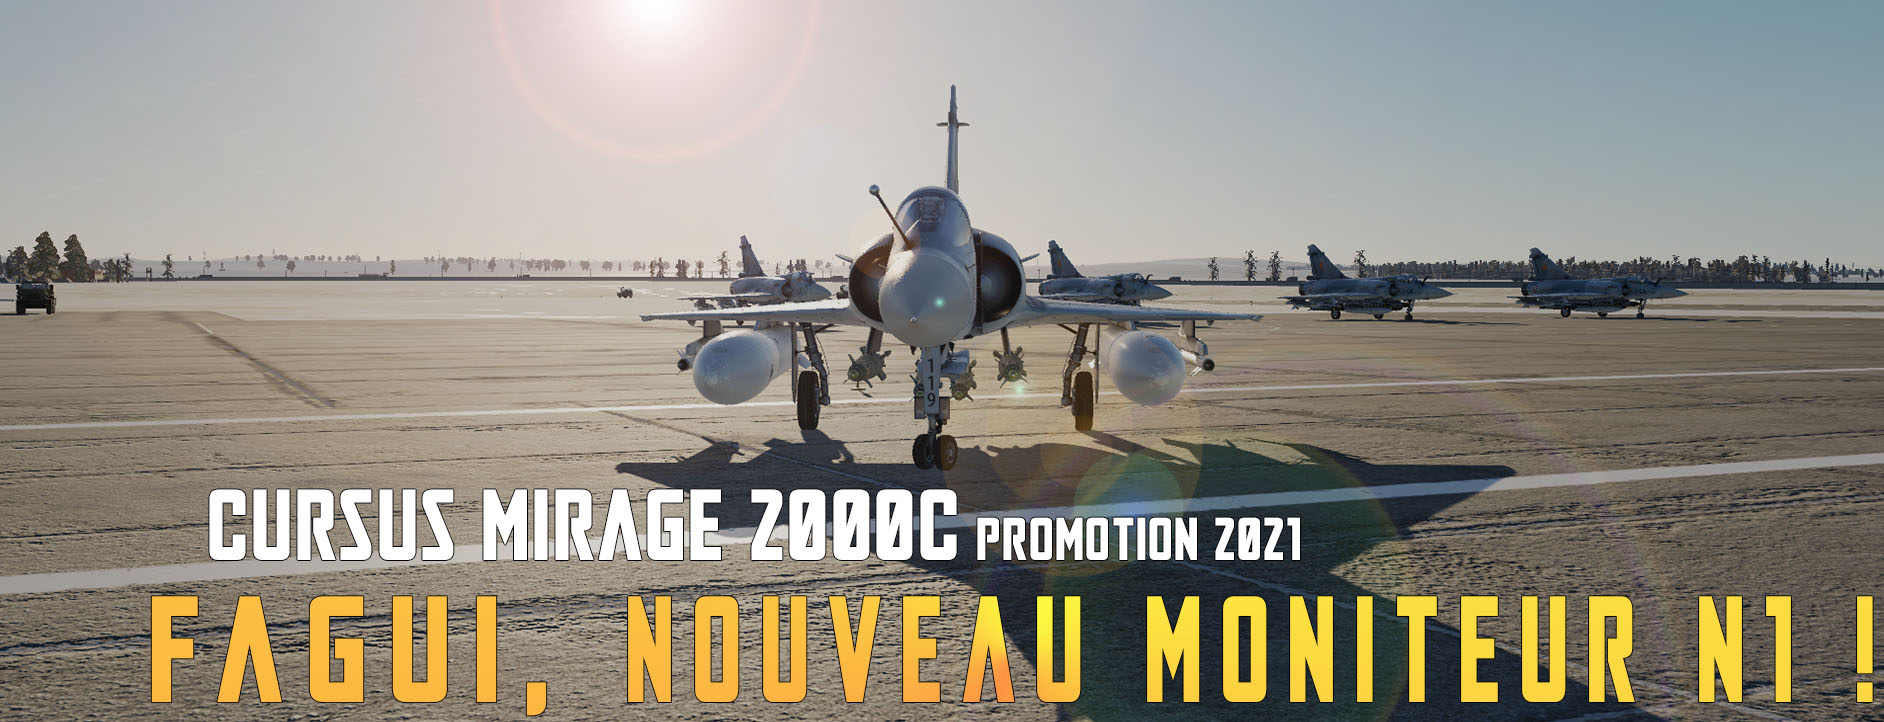 Fagui : nouveau moniteur N1 Mirage 2000C Cursus20